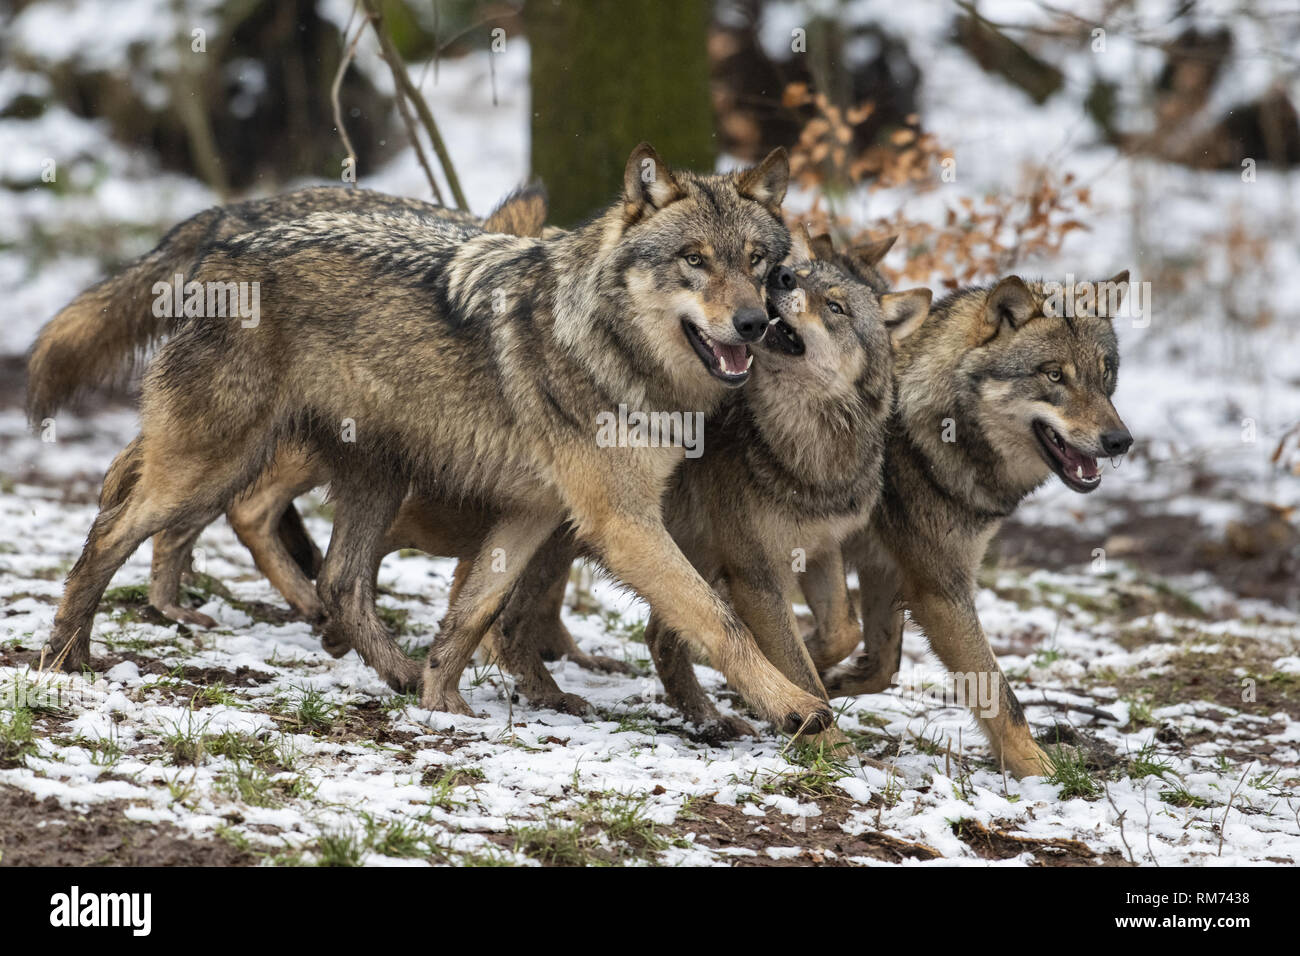 Manada de lobos (Canis lupus) en invierno bosque, Neuhaus, Baja Sajonia, Alemania Foto de stock